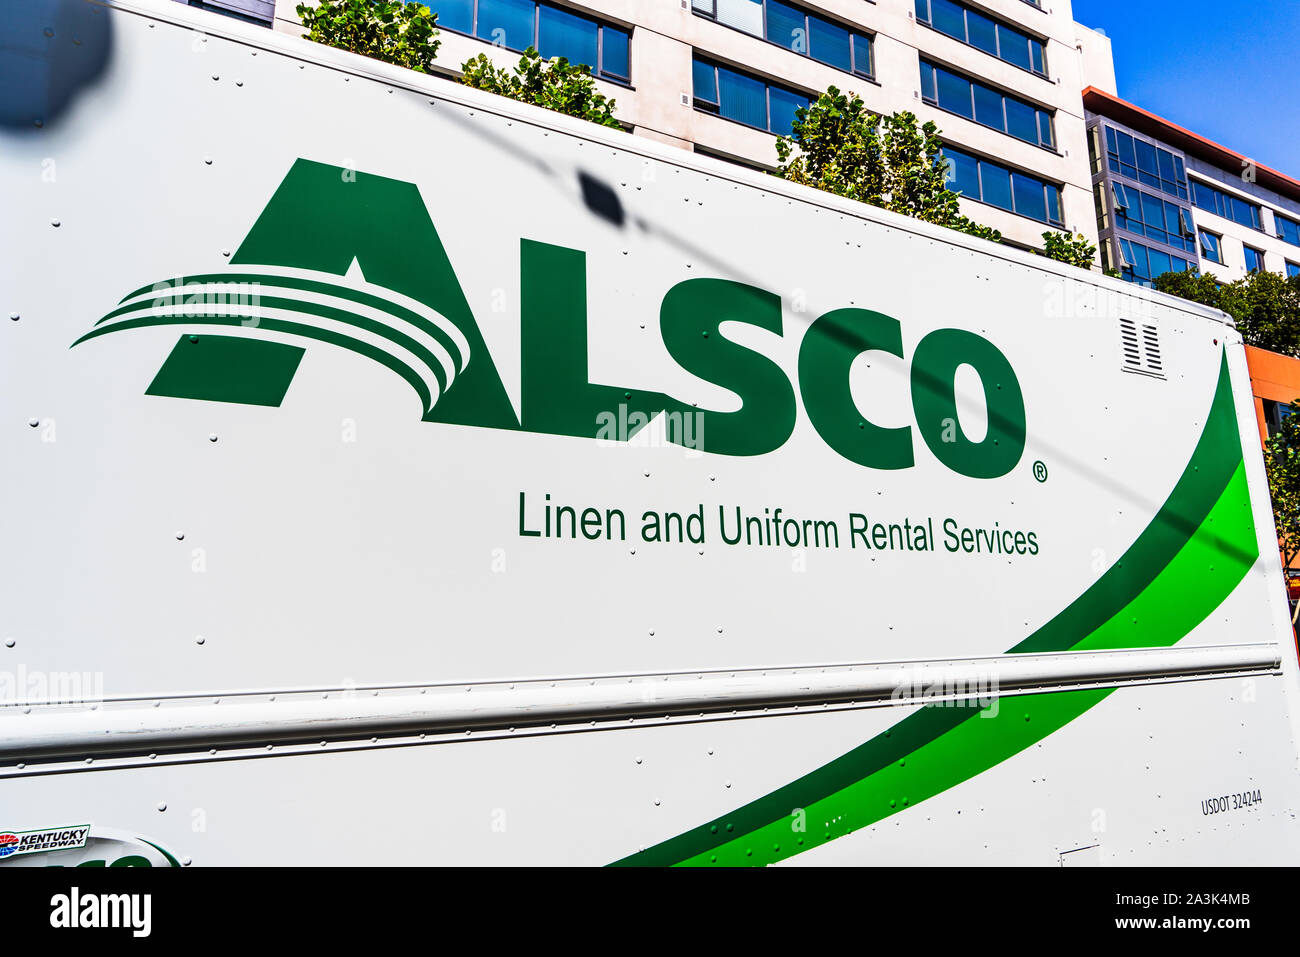 Sep 20, 2019 San Francisco / CA / USA - vehículo Alsco hacer entregas en San Francisco; Alsco, una empresa privada, es una ropa y bus de alquiler de uniformes Foto de stock